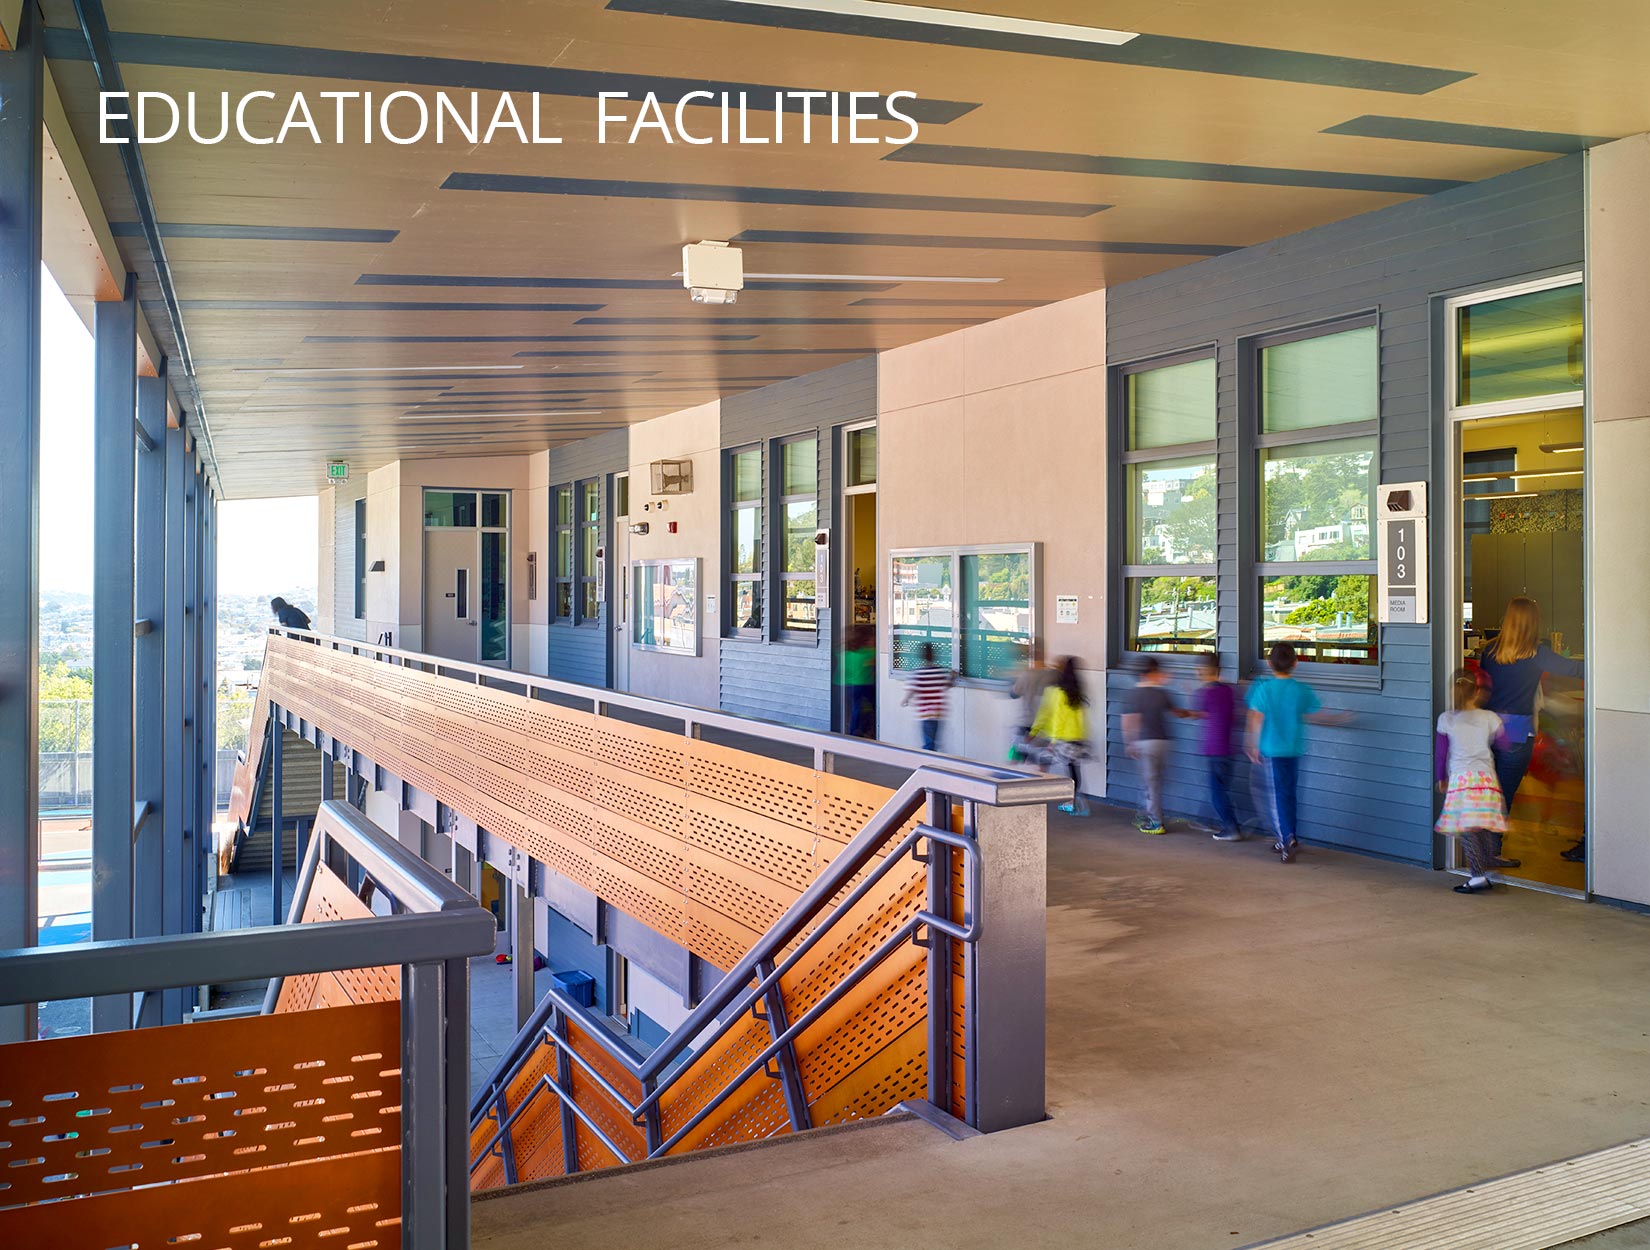 Educational Facilities